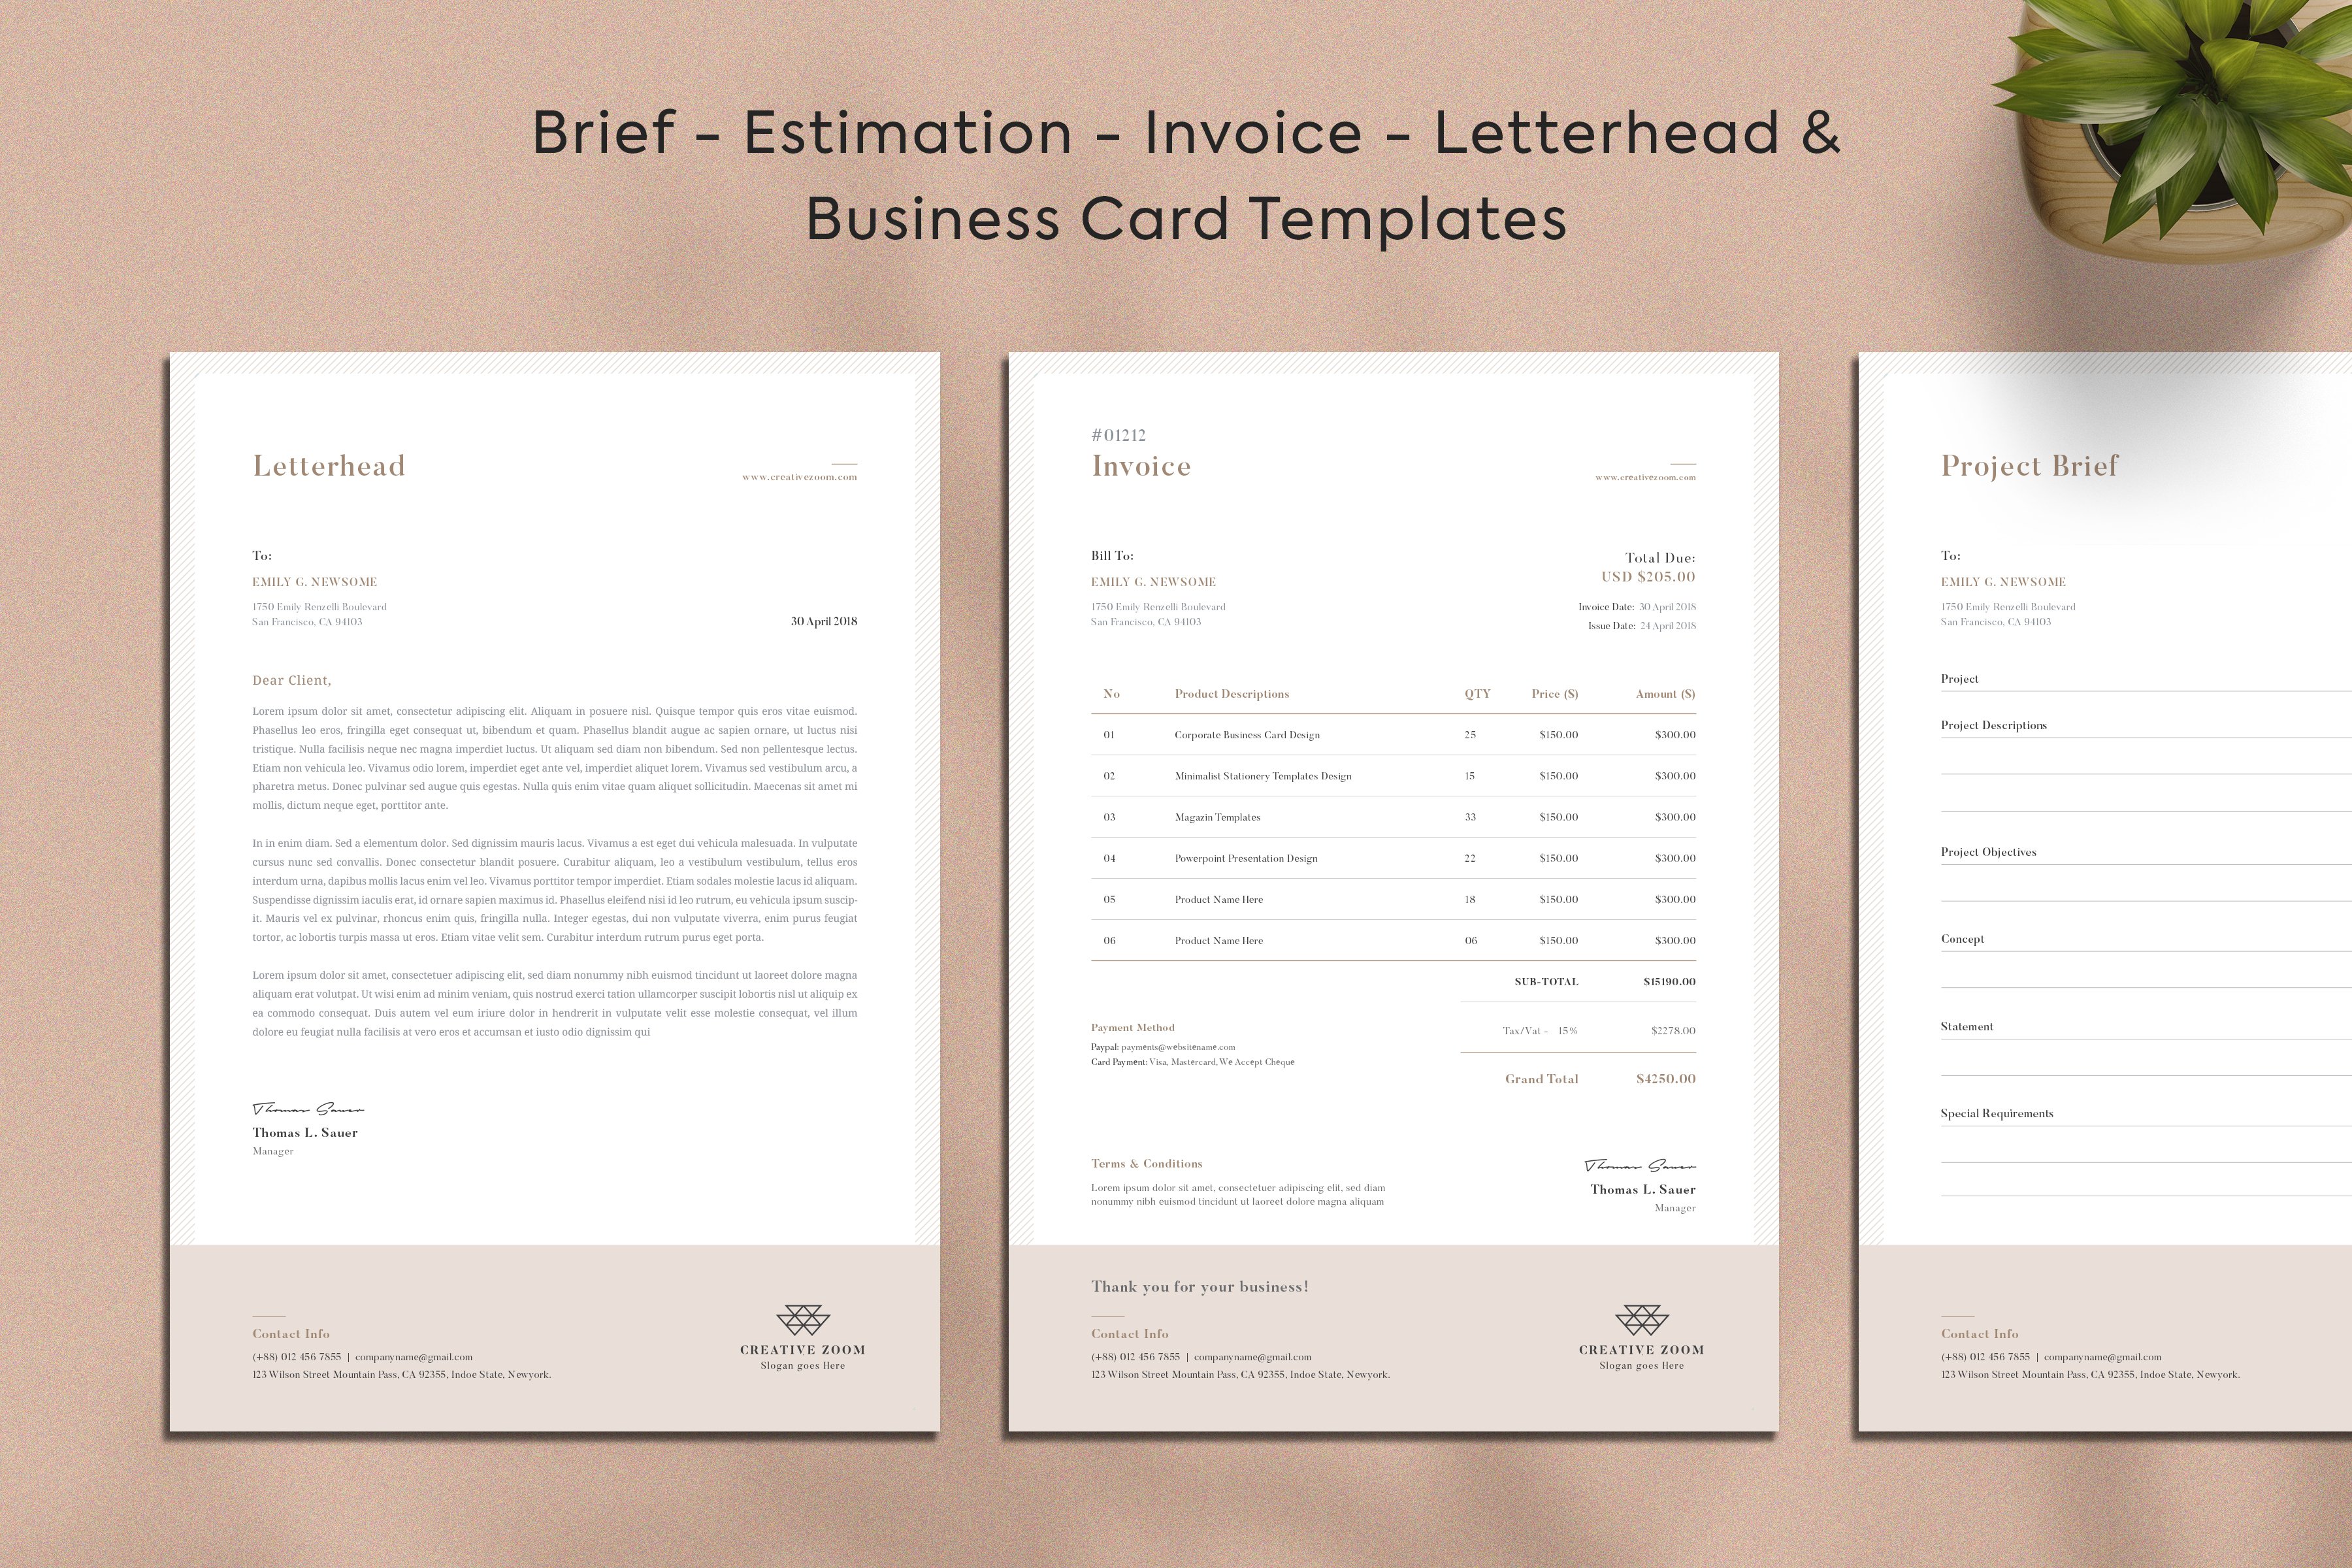 Invoice | Estimate | Letterhead cover image.